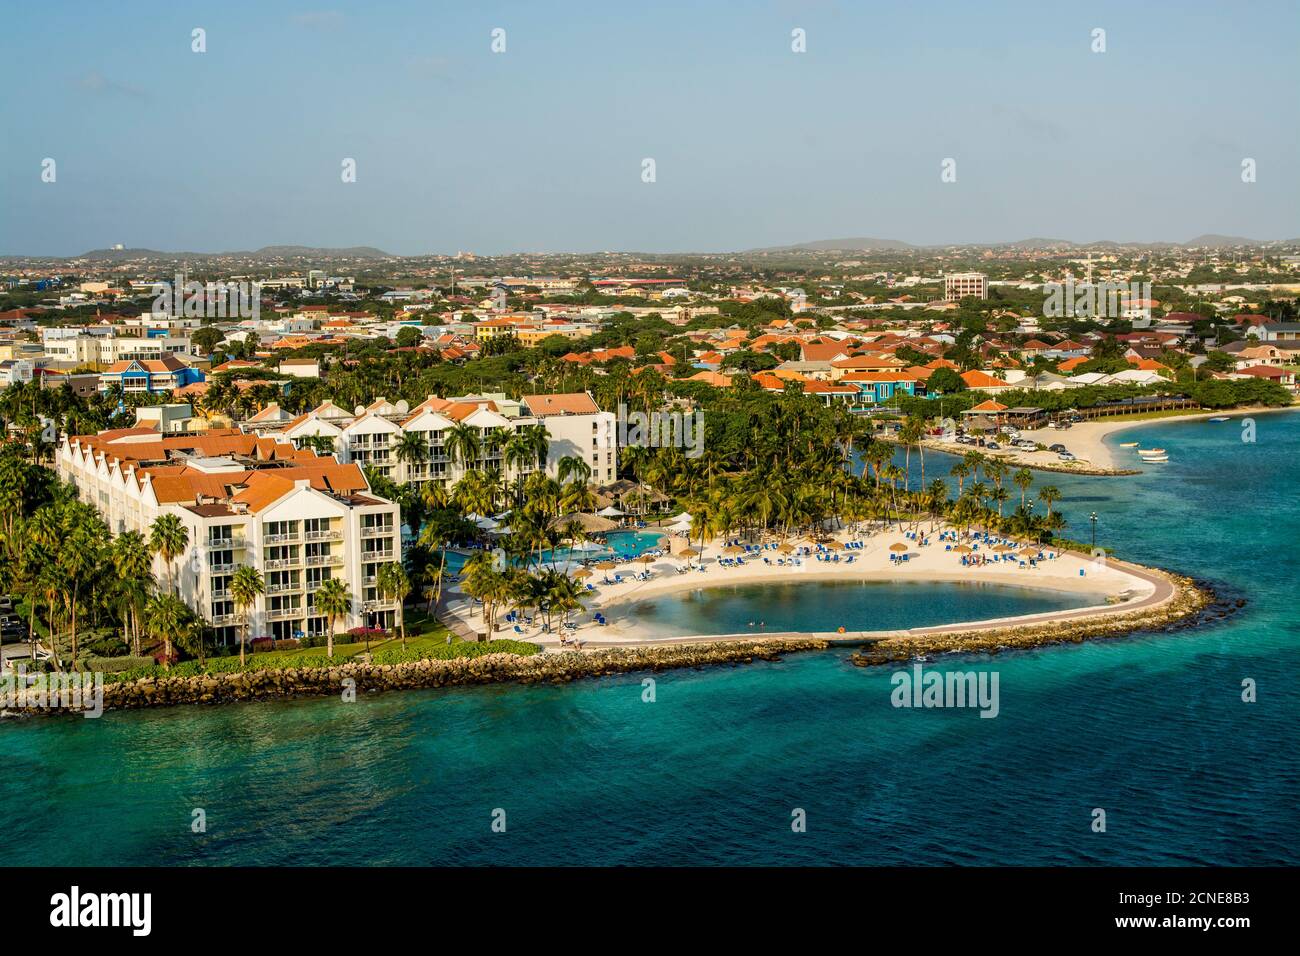 Vue aérienne de la station Oranjestad, Aruba, les îles ABC, les Antilles néerlandaises, les Caraïbes, l'Amérique centrale Banque D'Images